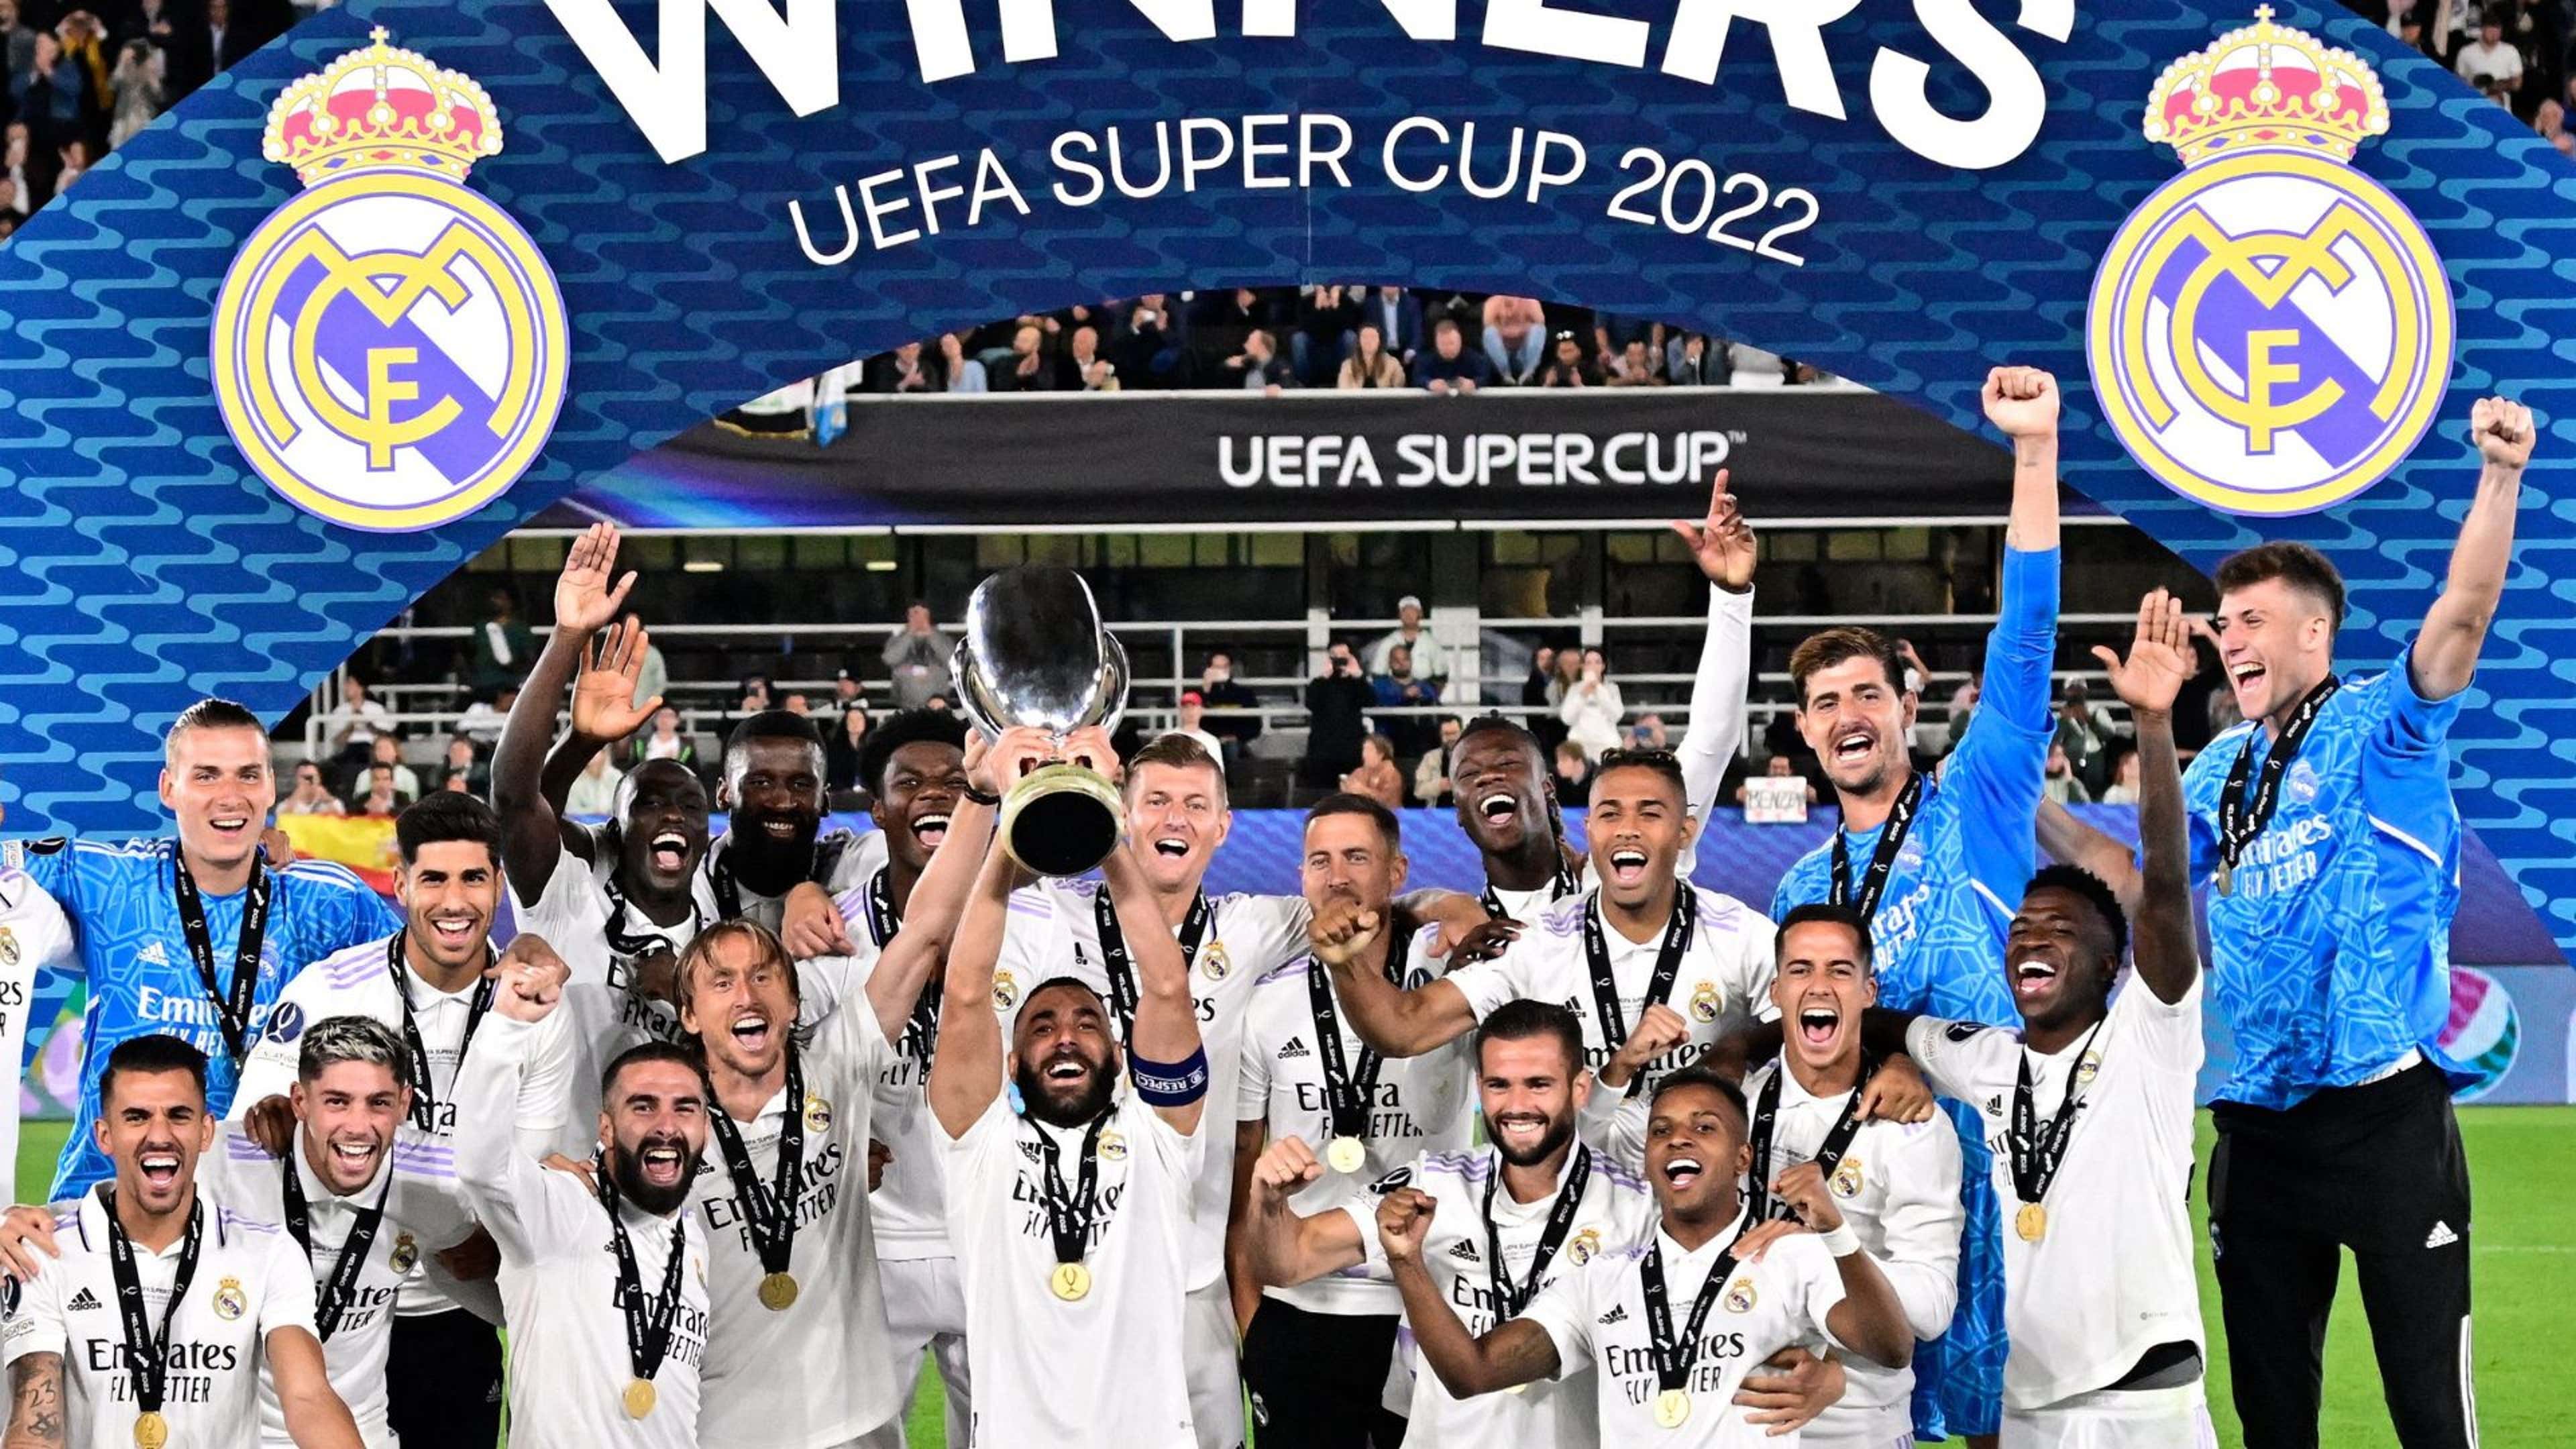 MAIORES VENCEDORES DA SUPERCOPA DA UEFA 